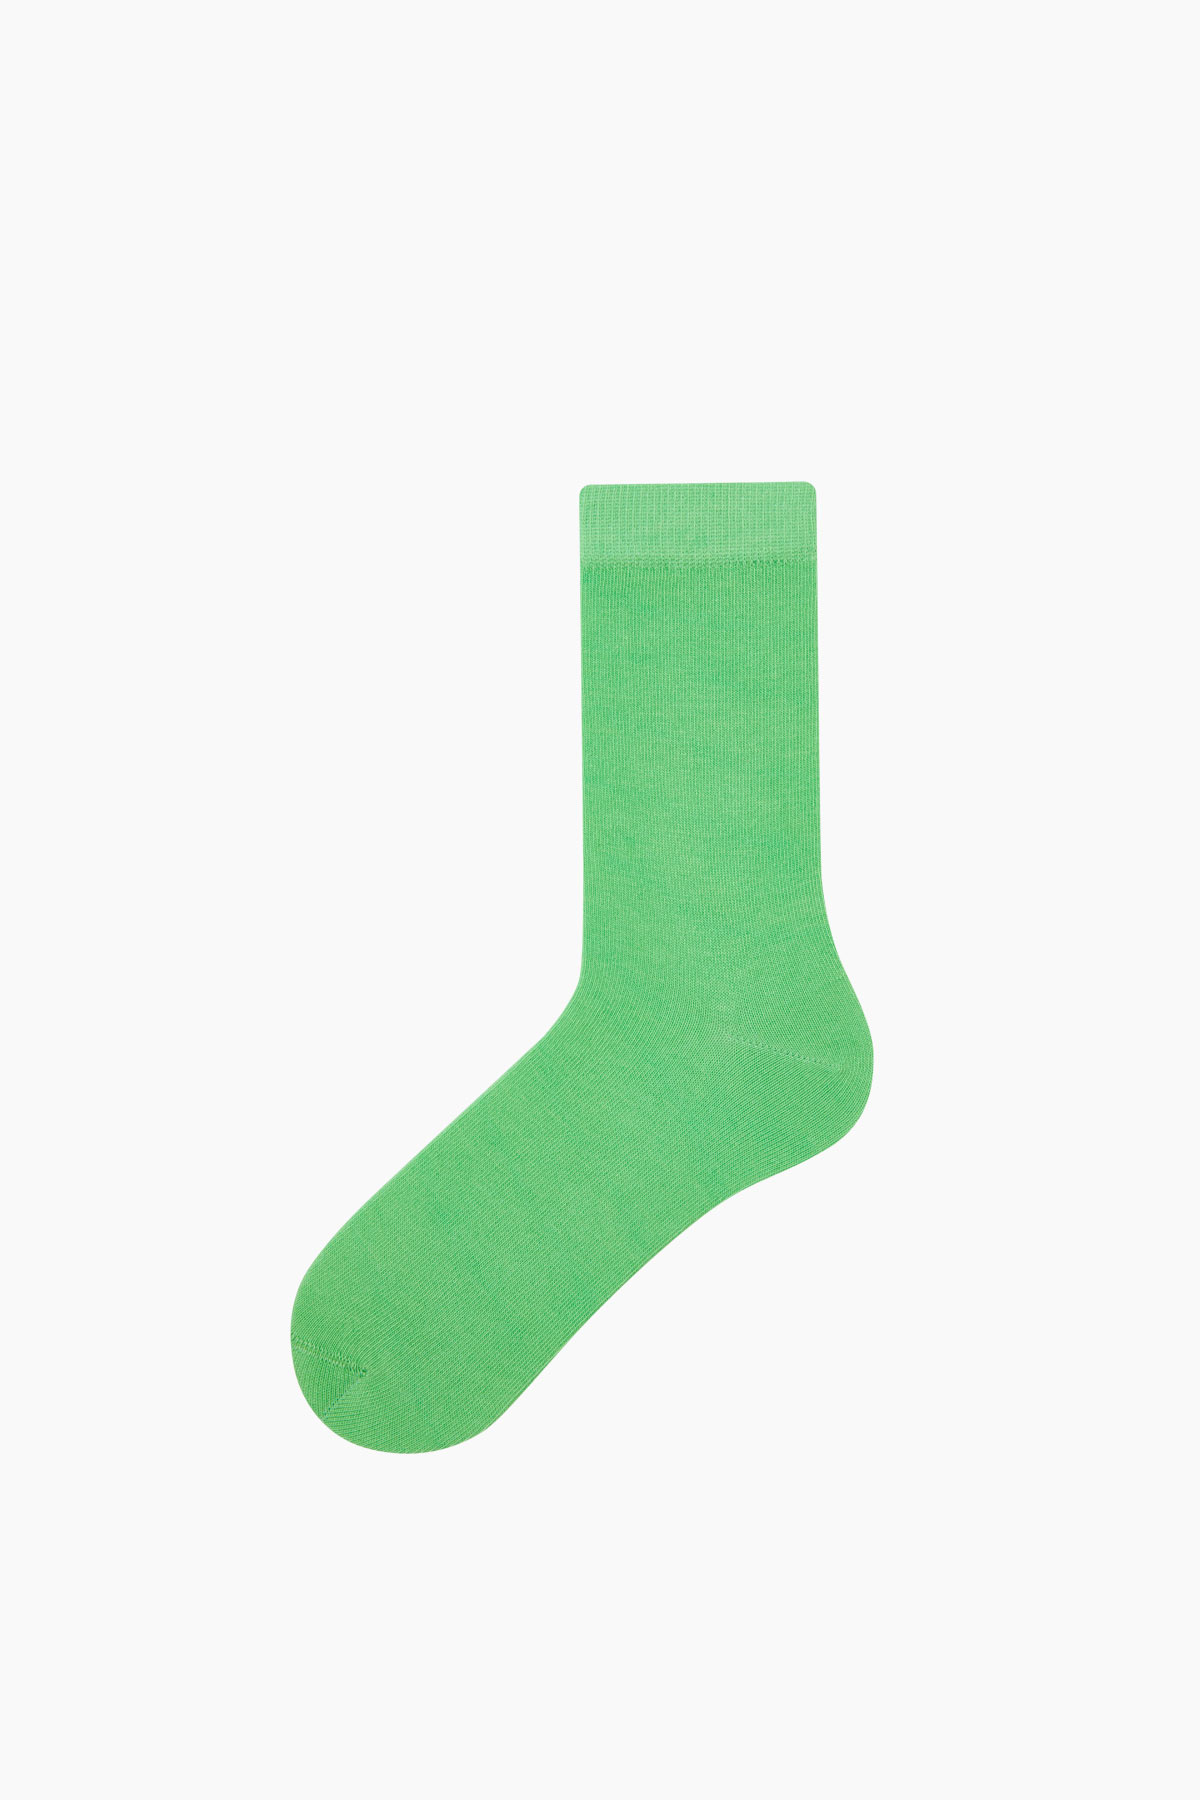 Bross - Renkli Kadın Çorabı